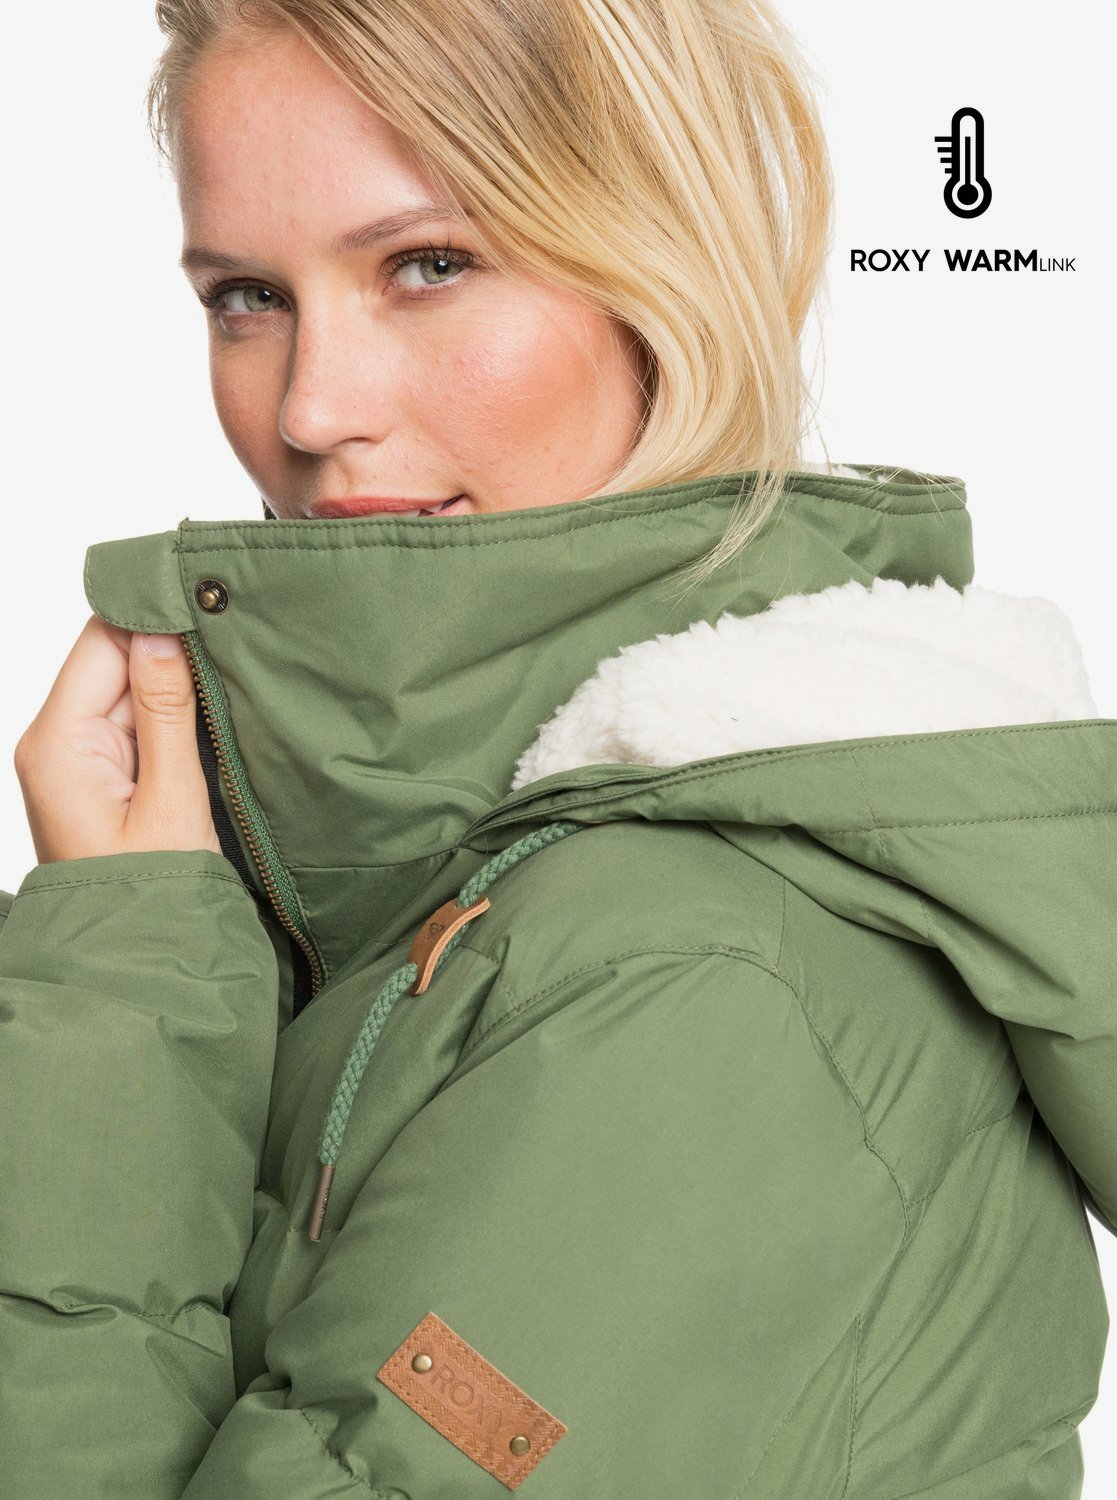 Roxy Ellie Plus Waterproof Longline Puffer Jacket - Women's - image 3 of 5